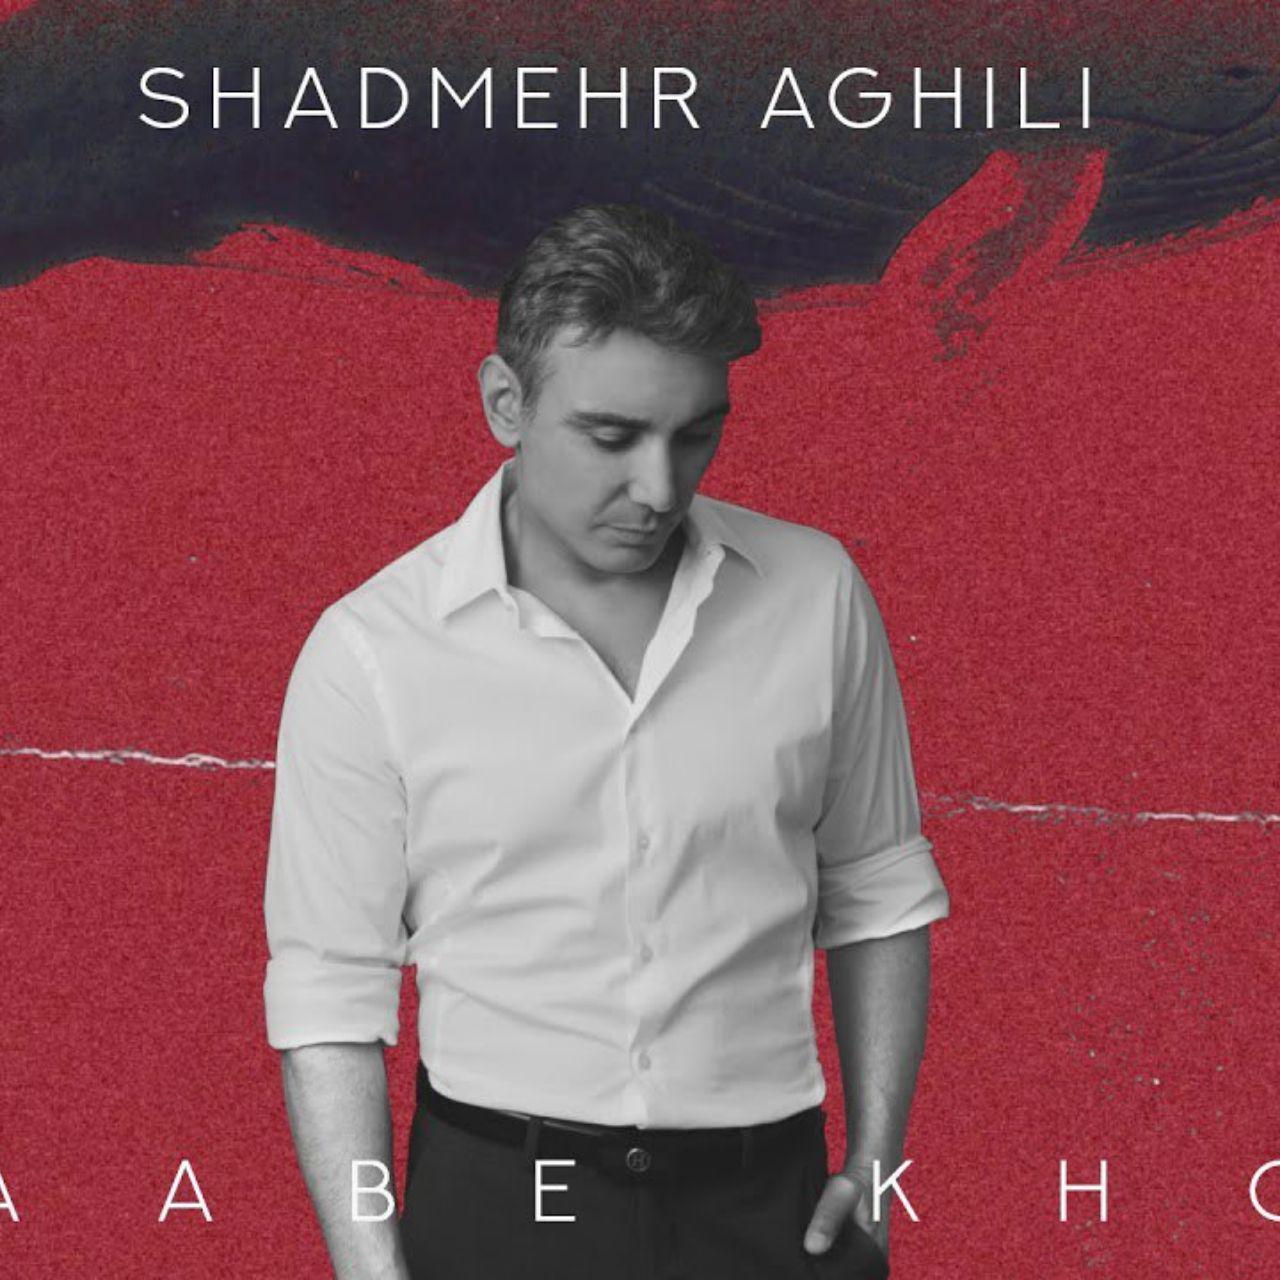  دانلود آهنگ جدید شادمهر عقیلی - خواب خوش | Download New Music By Shadmehr Aghili - Khaabe Khosh